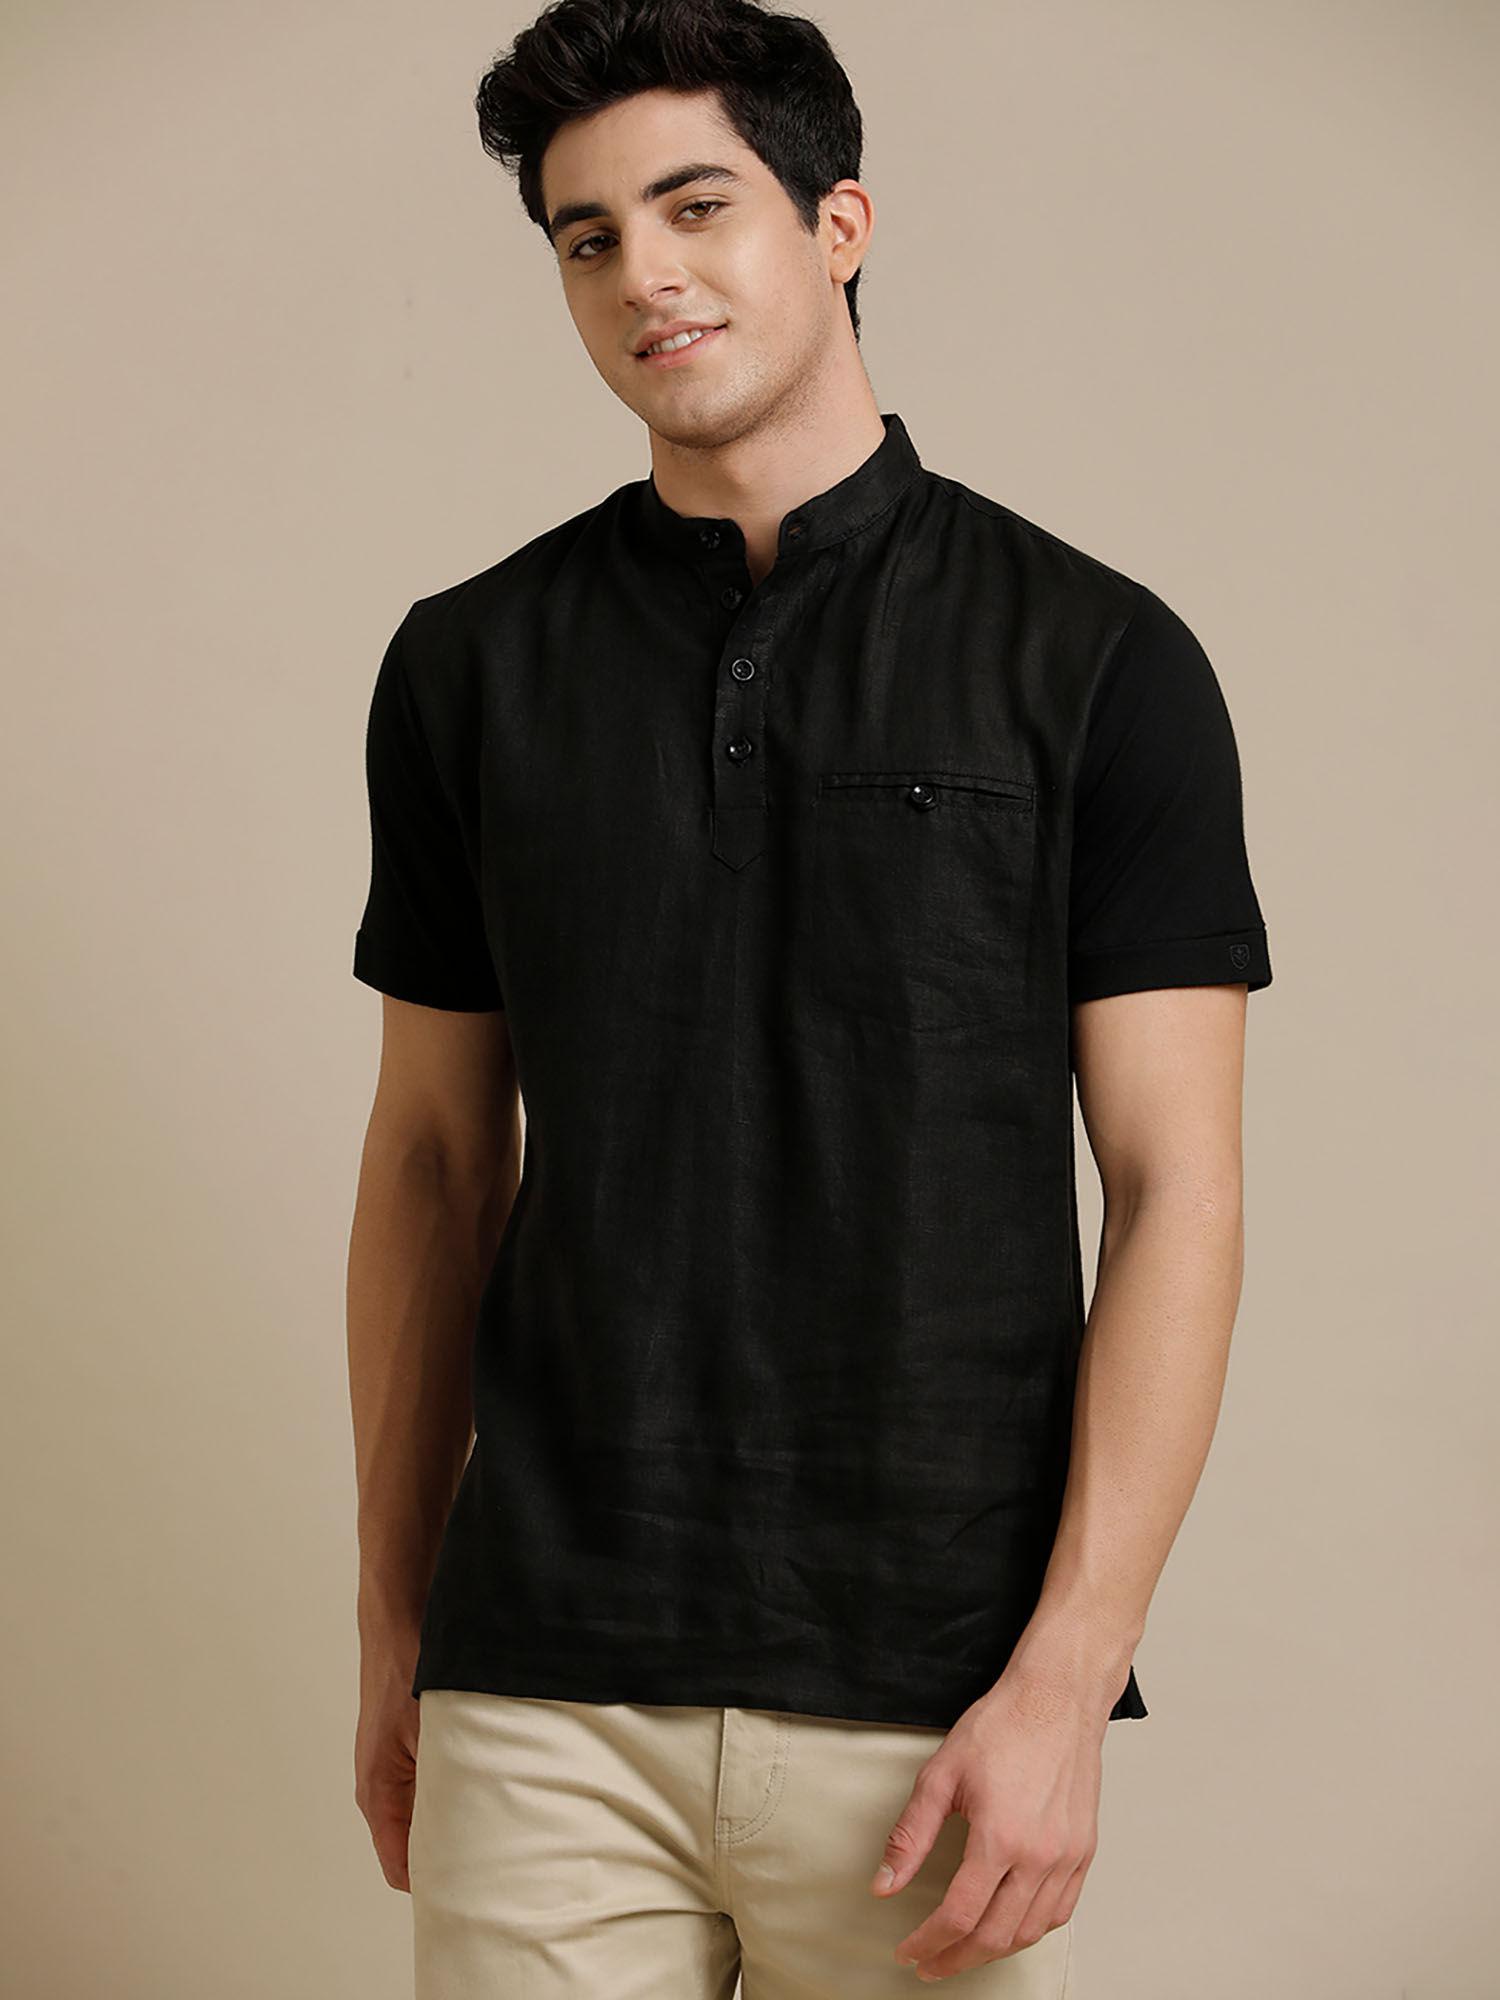 front woven back knit welt pocket black solid half sleeve t-shirt for men